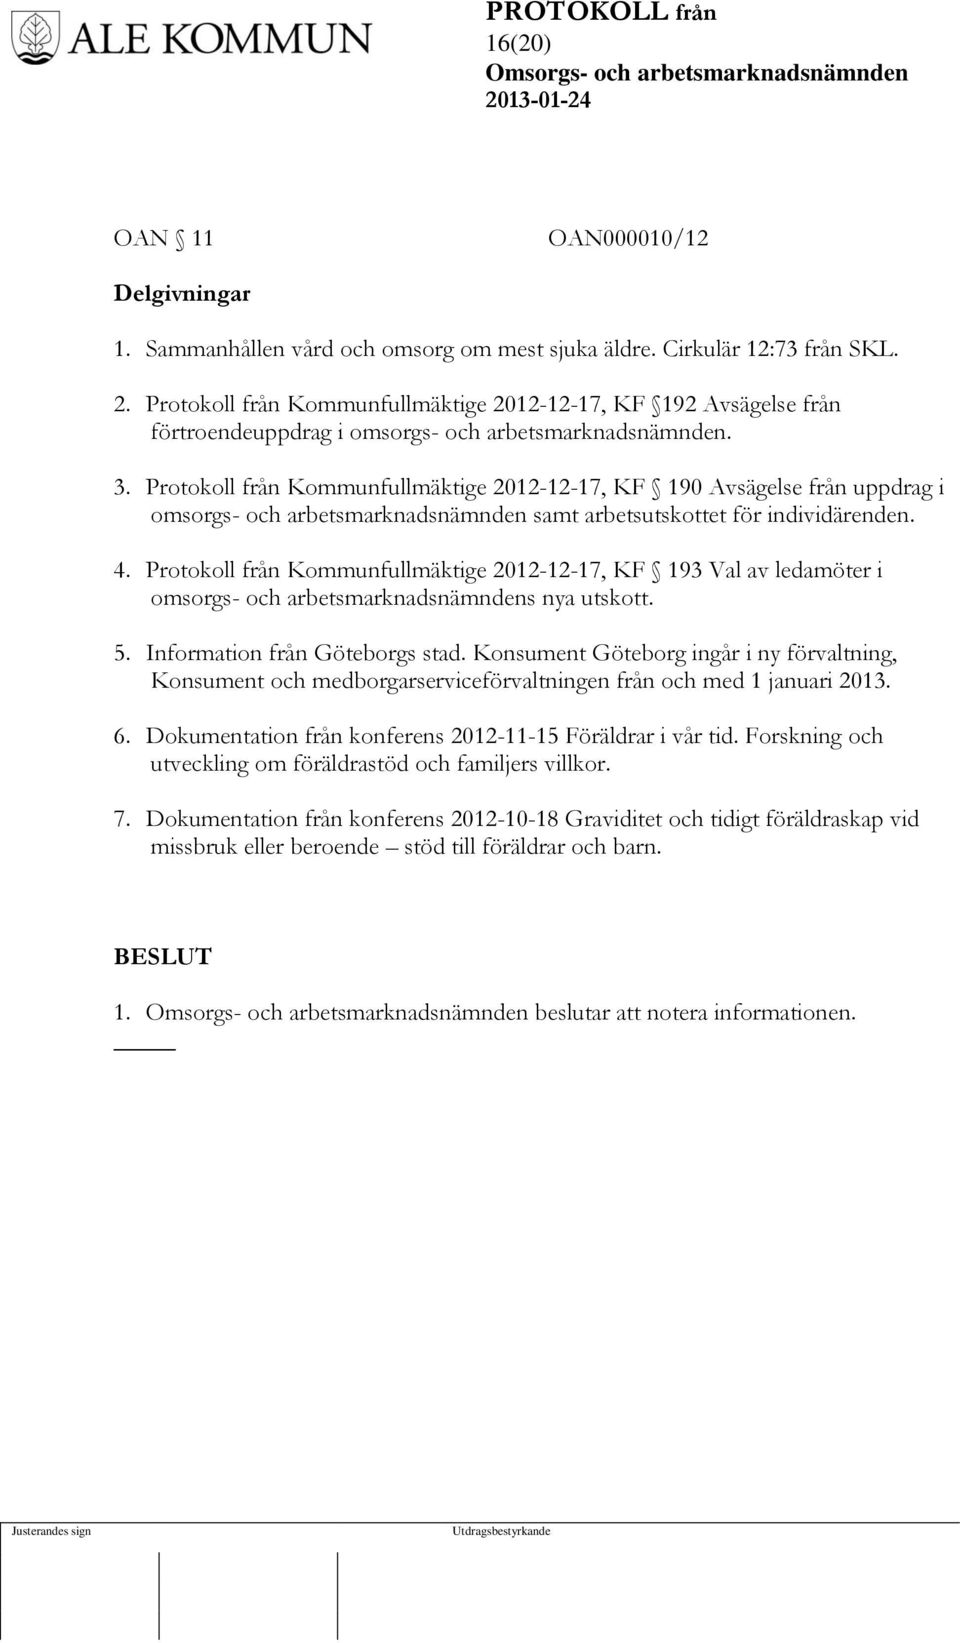 Protokoll från Kommunfullmäktige 2012-12-17, KF 190 Avsägelse från uppdrag i omsorgs- och arbetsmarknadsnämnden samt arbetsutskottet för individärenden. 4.